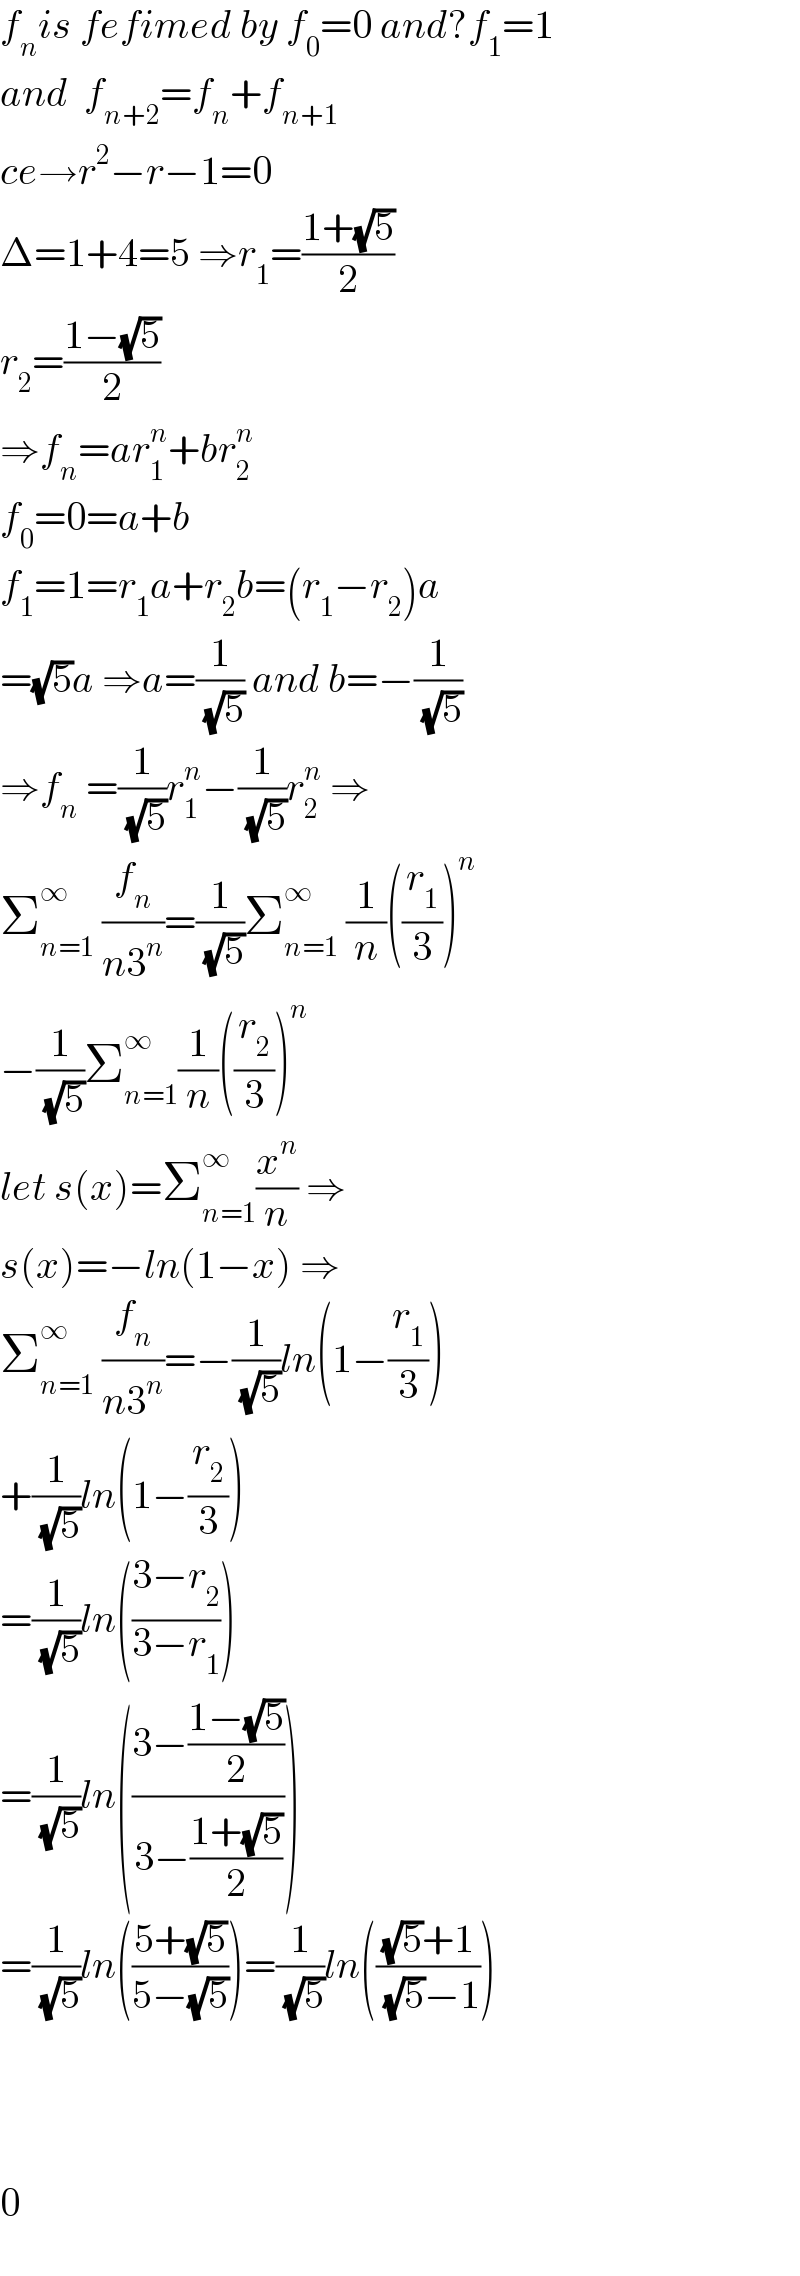 f_n is fefimed by f_0 =0 and?f_1 =1  and  f_(n+2) =f_n +f_(n+1)   ce→r^2 −r−1=0  Δ=1+4=5 ⇒r_1 =((1+(√5))/2)  r_2 =((1−(√5))/2)  ⇒f_n =ar_1 ^n +br_2 ^n   f_0 =0=a+b  f_1 =1=r_1 a+r_2 b=(r_1 −r_2 )a  =(√5)a ⇒a=(1/( (√5))) and b=−(1/( (√5)))  ⇒f_n  =(1/( (√5)))r_1 ^n −(1/( (√5)))r_2 ^n  ⇒  Σ_(n=1) ^∞  (f_n /(n3^n ))=(1/( (√5)))Σ_(n=1) ^∞  (1/n)((r_1 /3))^n   −(1/( (√5)))Σ_(n=1) ^∞ (1/n)((r_2 /3))^n   let s(x)=Σ_(n=1) ^∞ (x^n /n) ⇒  s(x)=−ln(1−x) ⇒  Σ_(n=1) ^∞  (f_n /(n3^n ))=−(1/( (√5)))ln(1−(r_1 /3))  +(1/( (√5)))ln(1−(r_2 /3))  =(1/( (√5)))ln(((3−r_2 )/(3−r_1 )))  =(1/( (√5)))ln(((3−((1−(√5))/2))/(3−((1+(√5))/2))))  =(1/( (√5)))ln(((5+(√5))/(5−(√5))))=(1/( (√5)))ln((((√5)+1)/( (√5)−1)))        0  